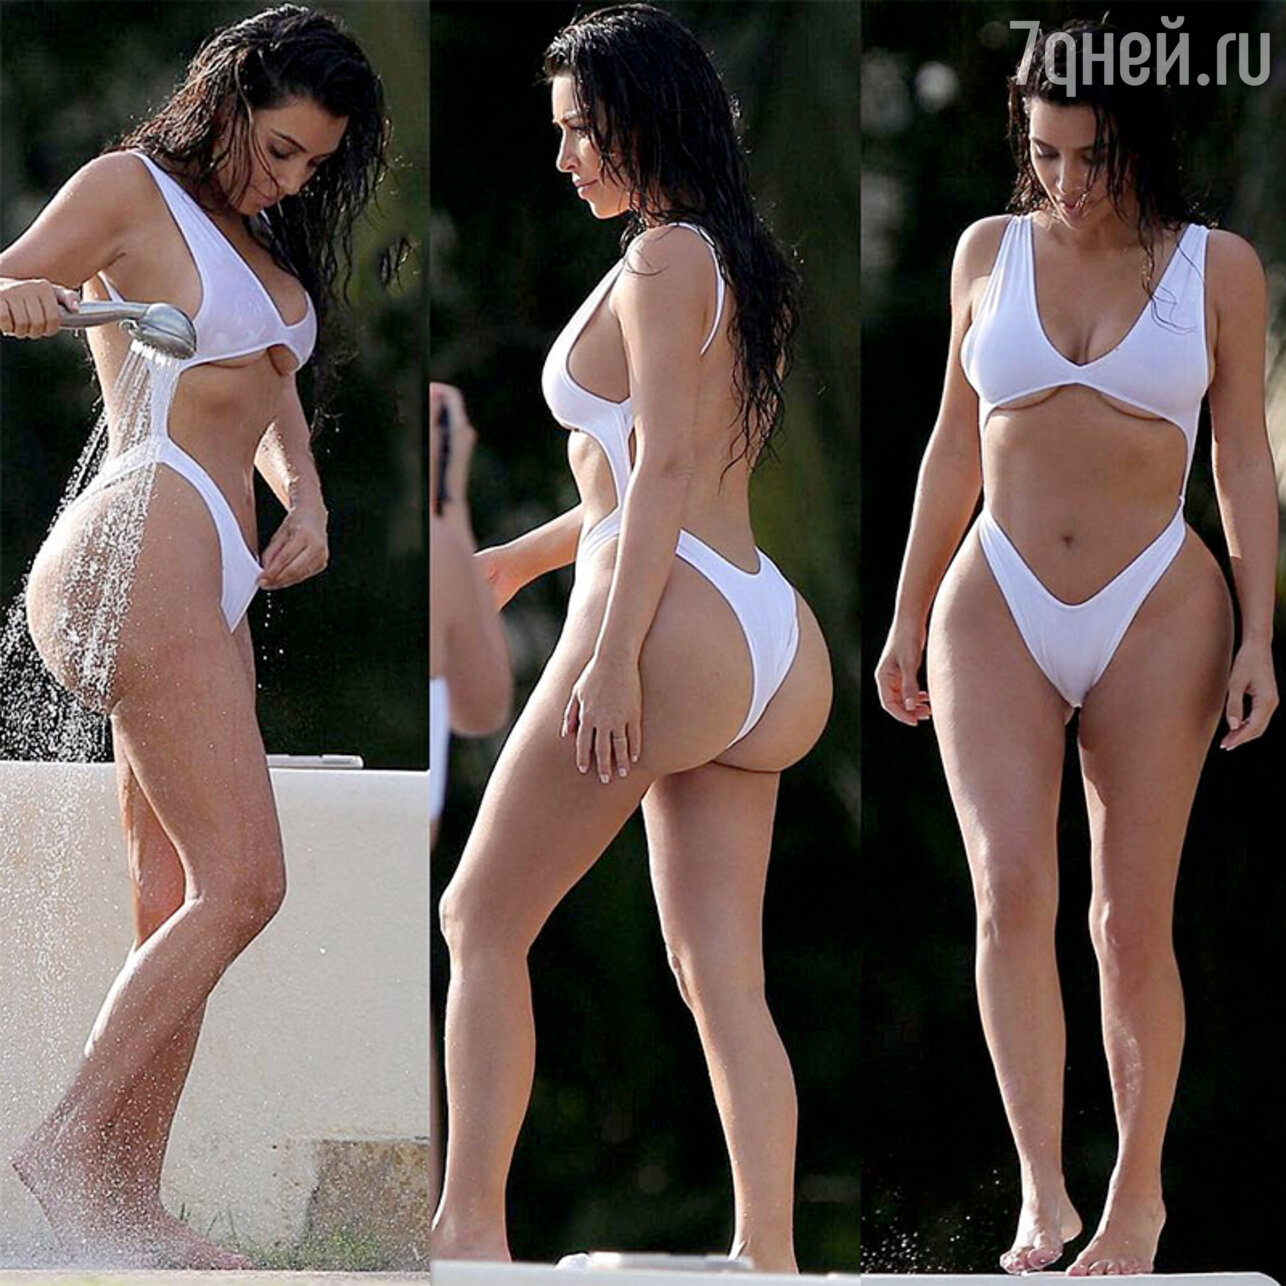 Romina Kardashian